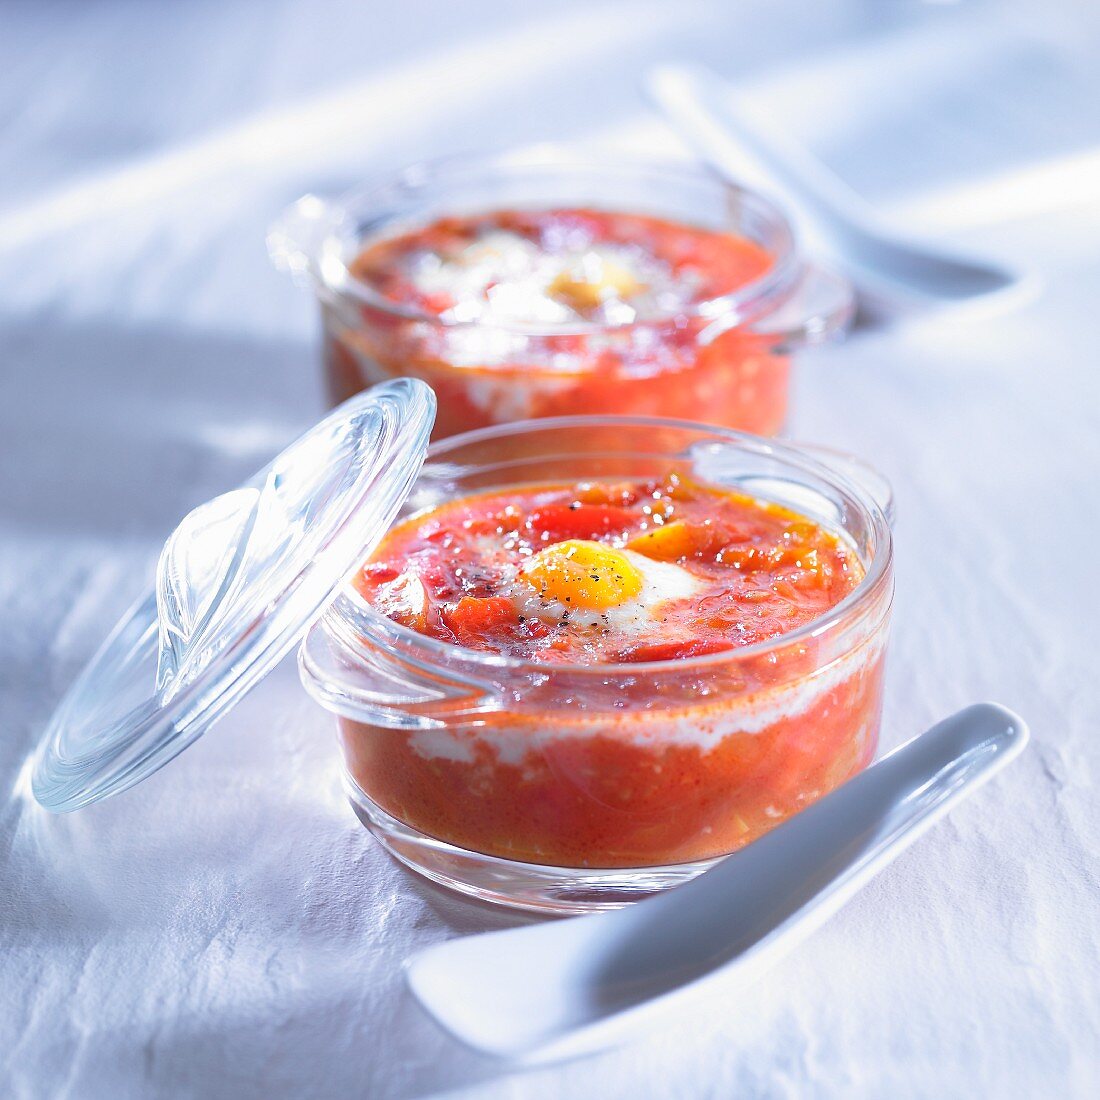 Paprika-Tomaten-Gemüse mit Ei (Baskenland)